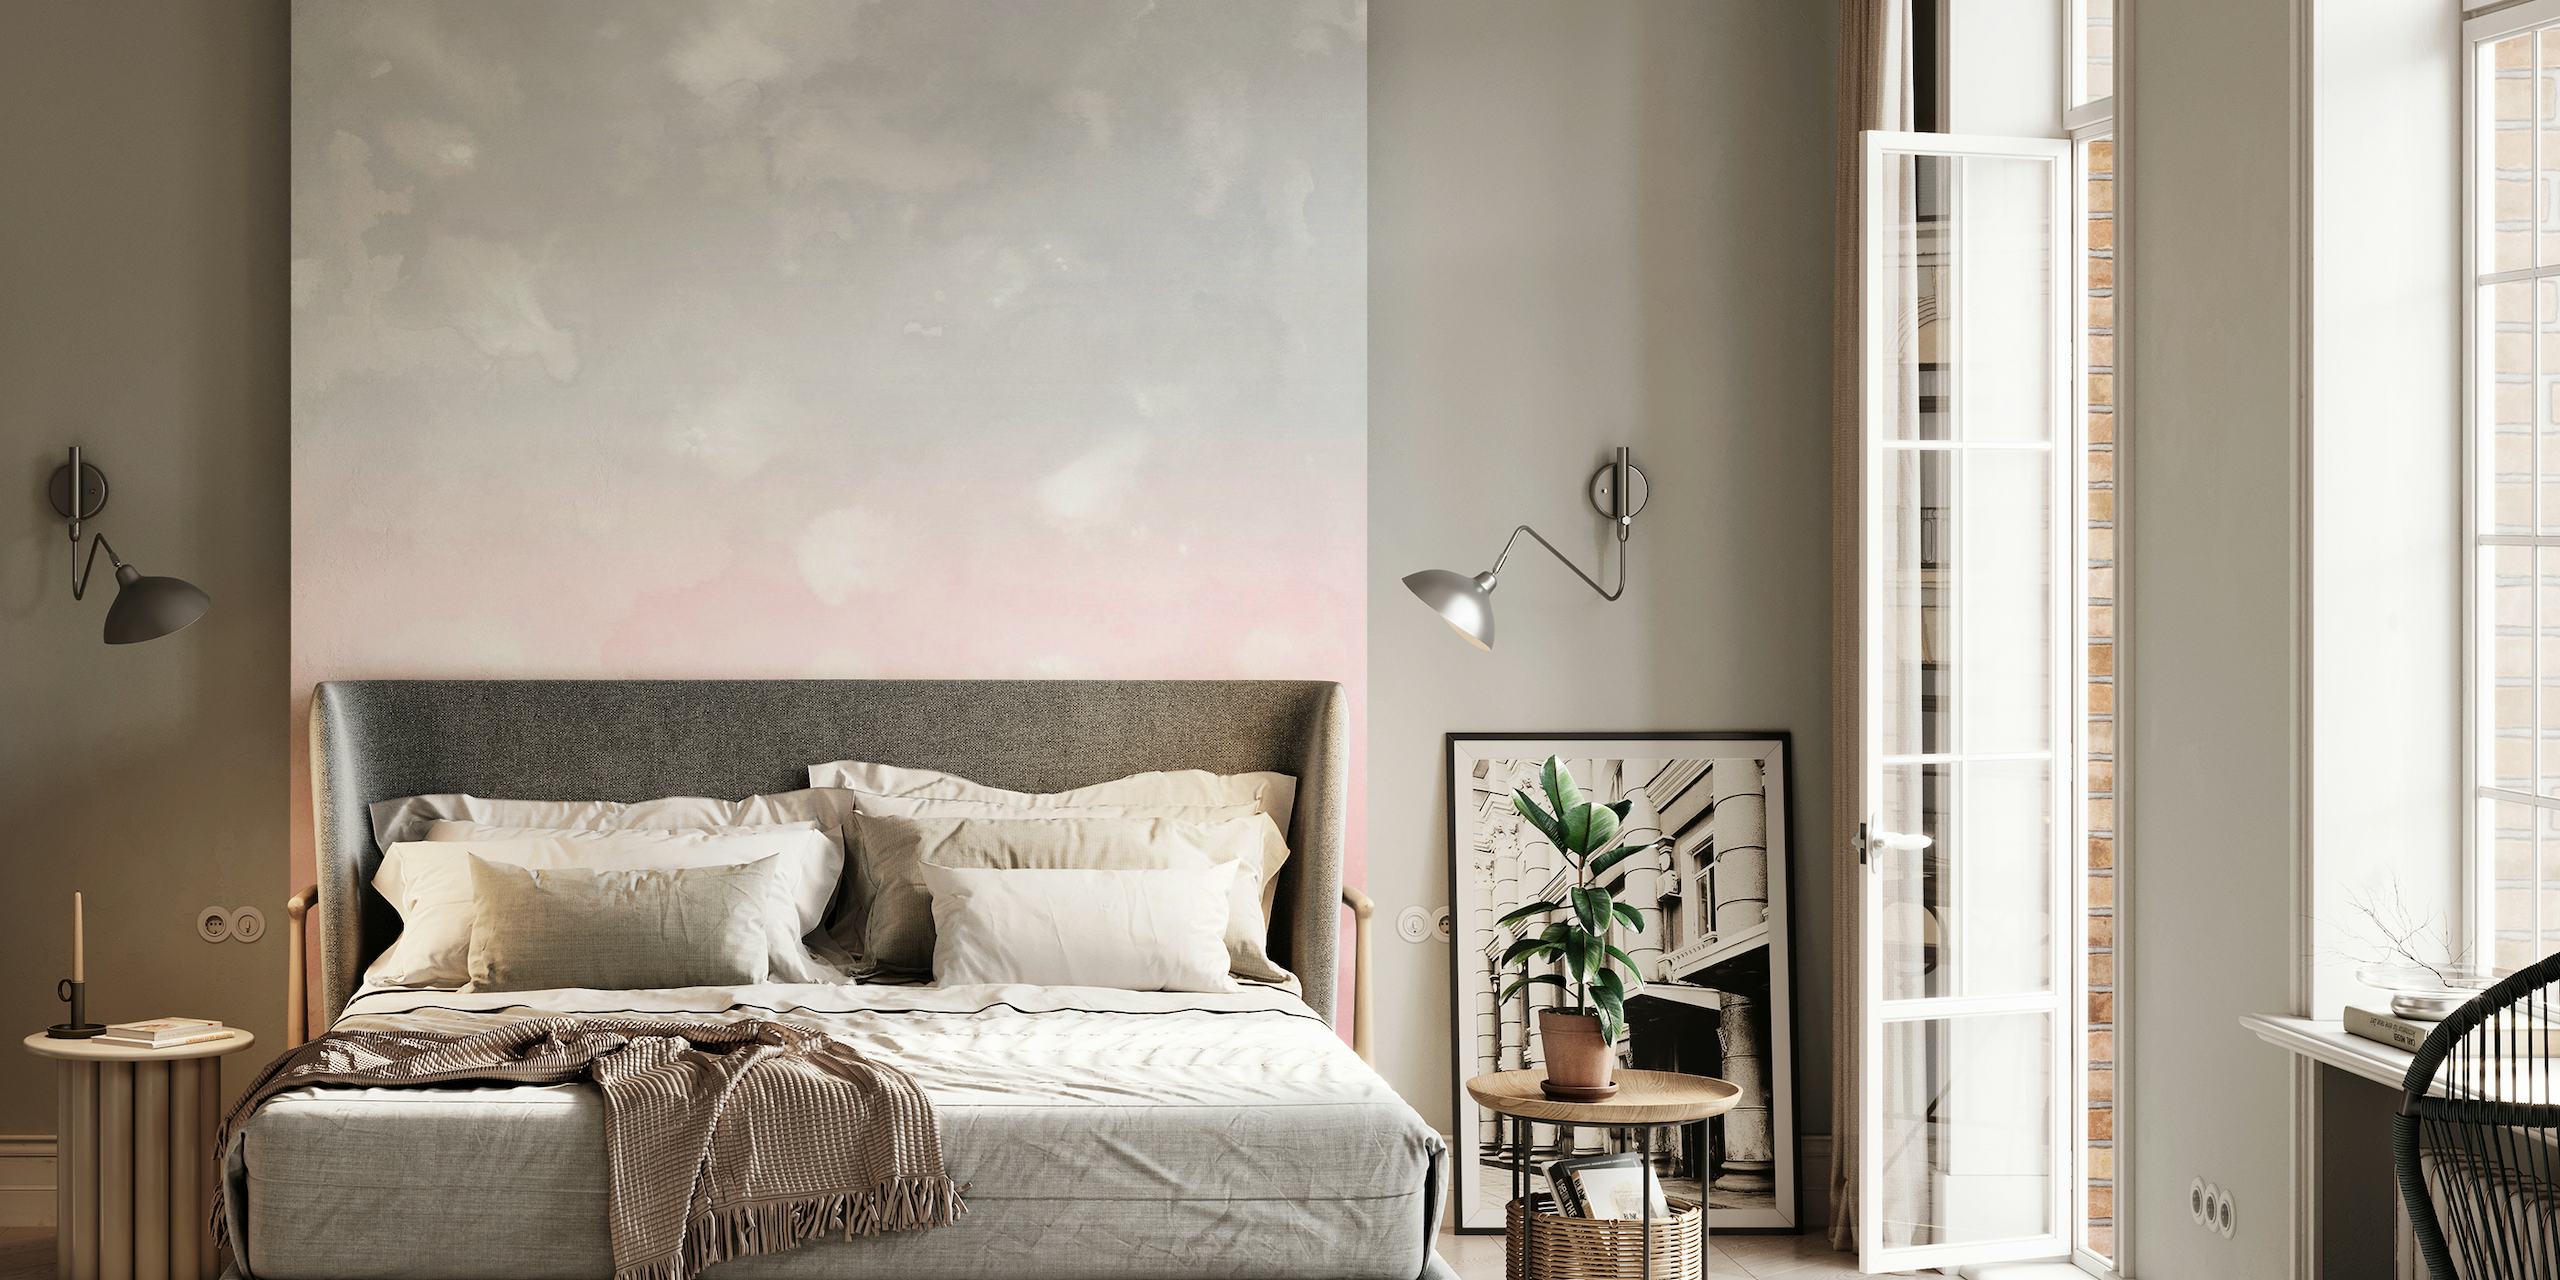 Blozend en grijs abstract fotobehang met een zachte, dromerige aquareltextuur